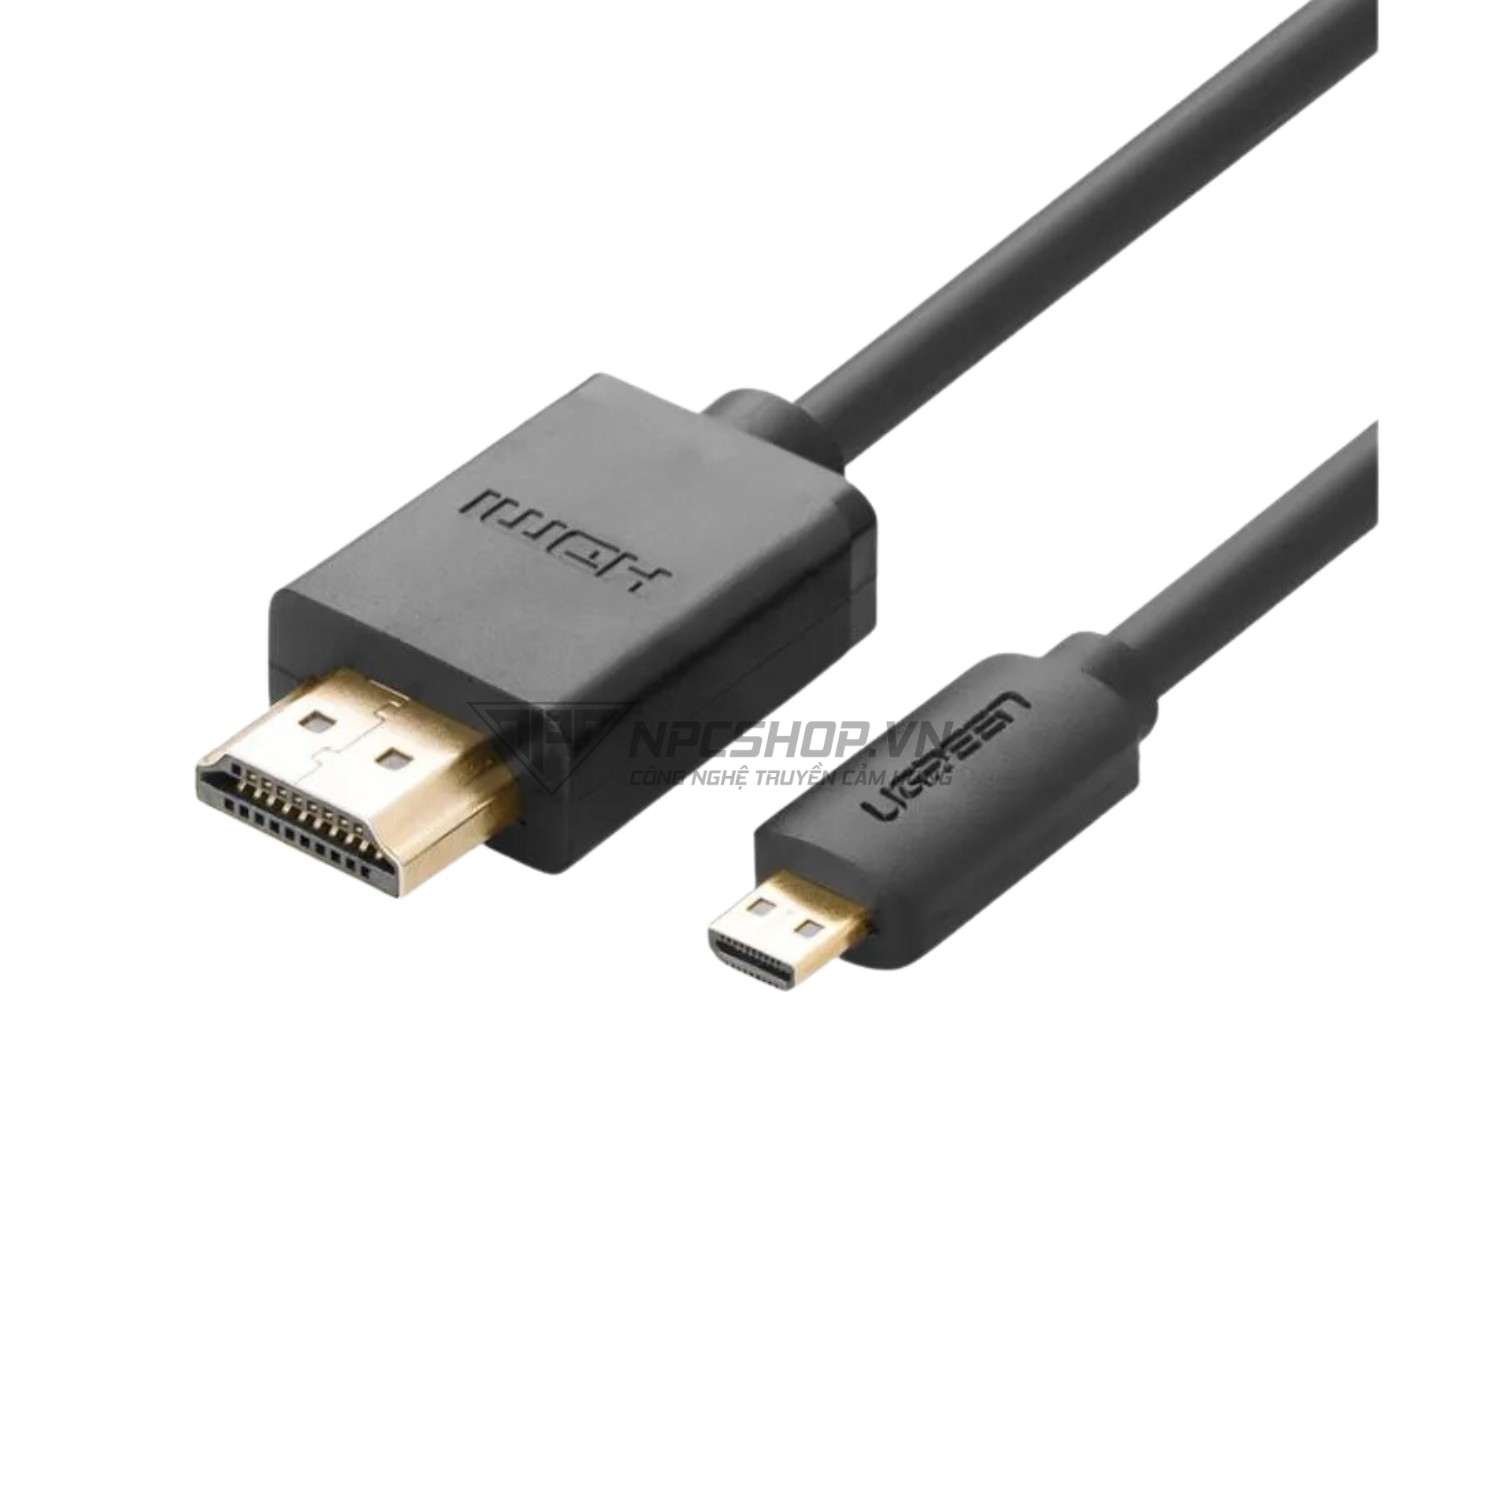 Cáp chuyển Micro HDMI to HDMI dài 3M Ugreen 30104